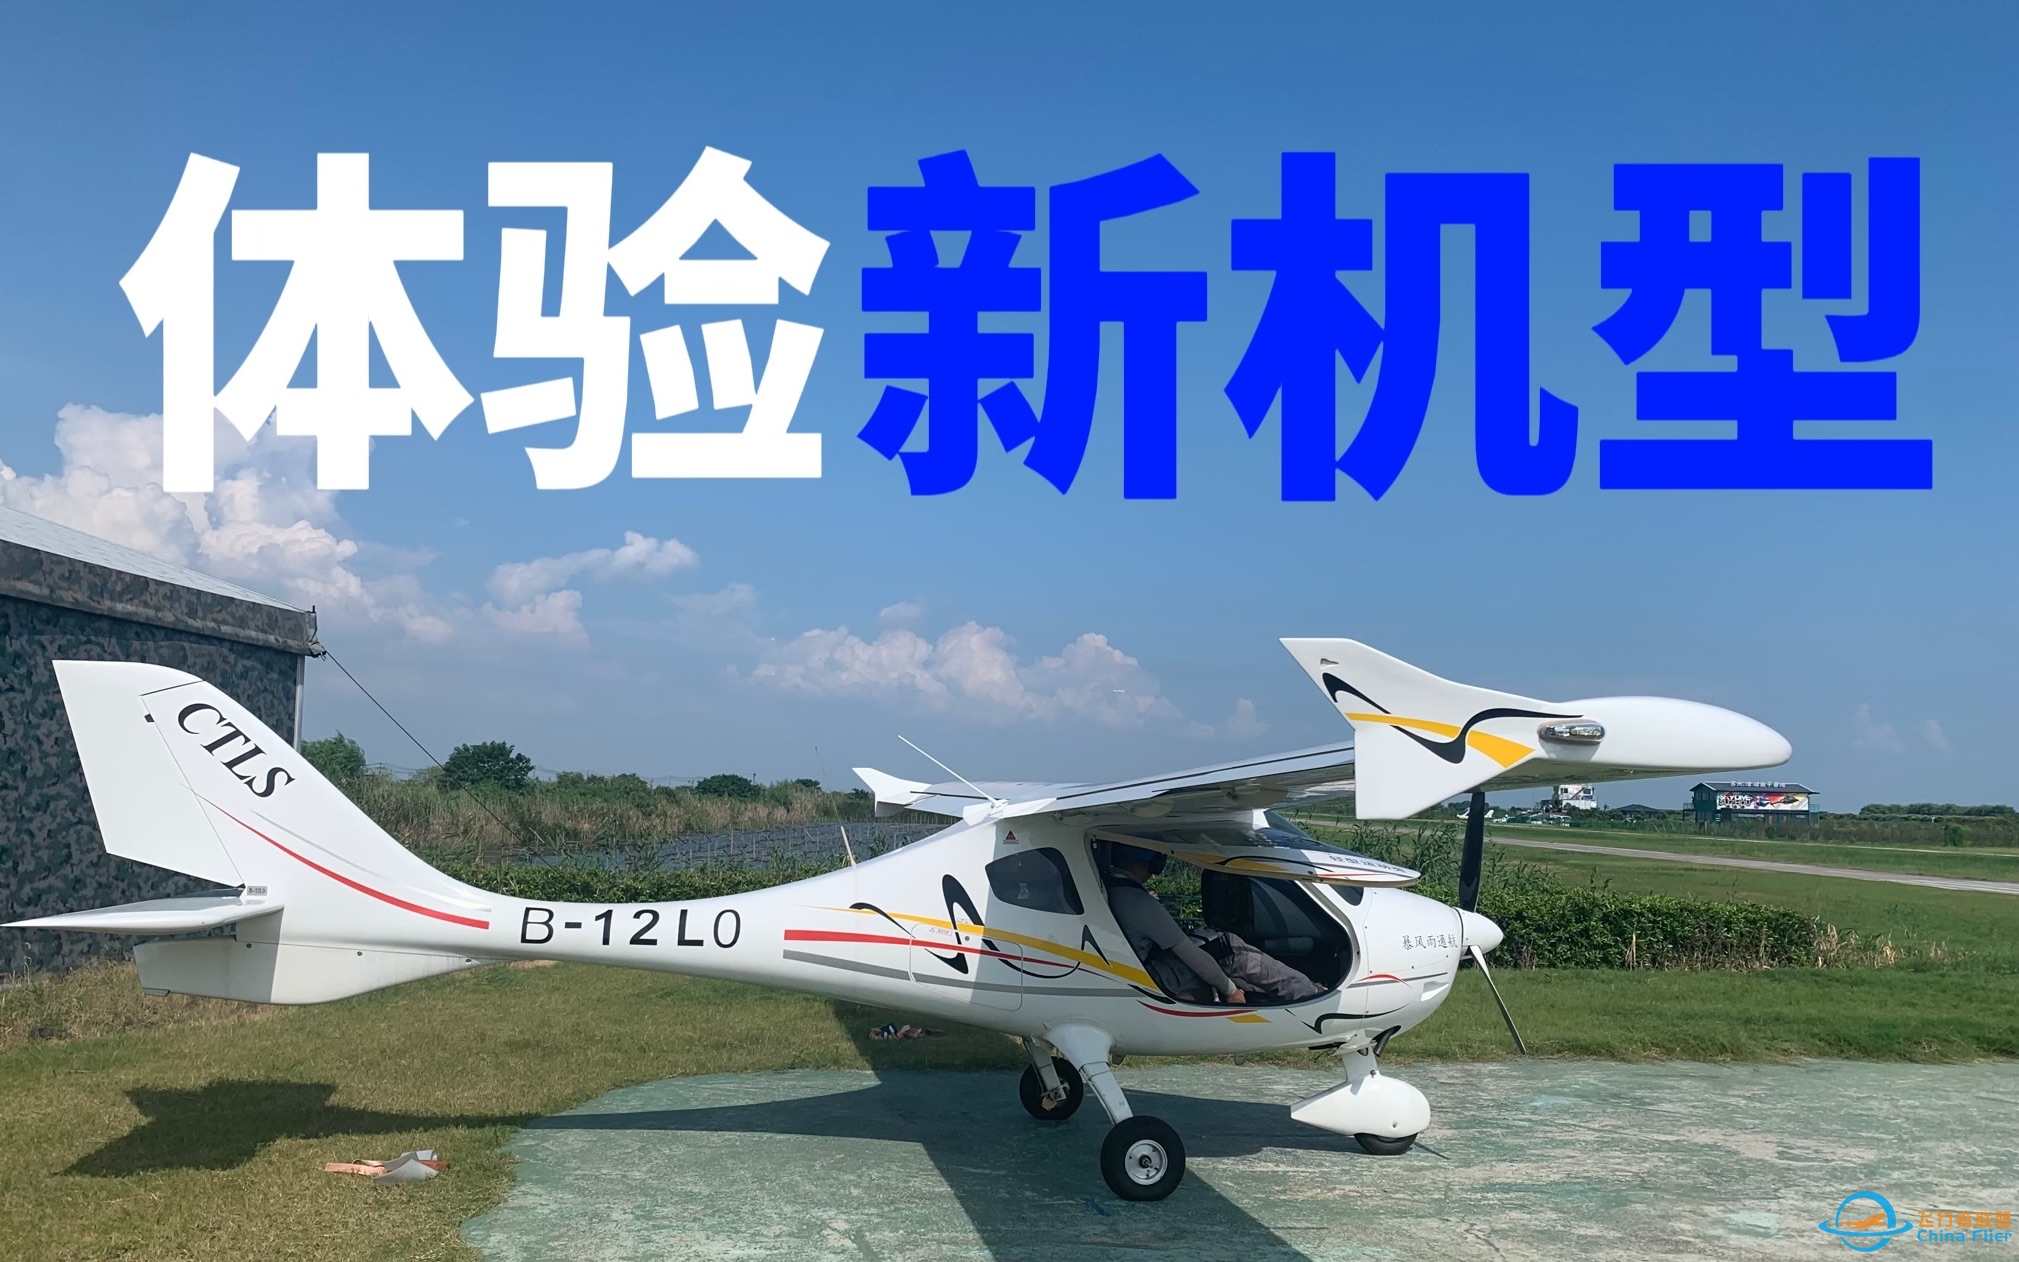 【体验飞行】初中生飞友首次体验驾驶CTLS飞机｜新的机型新的挑战-2802 